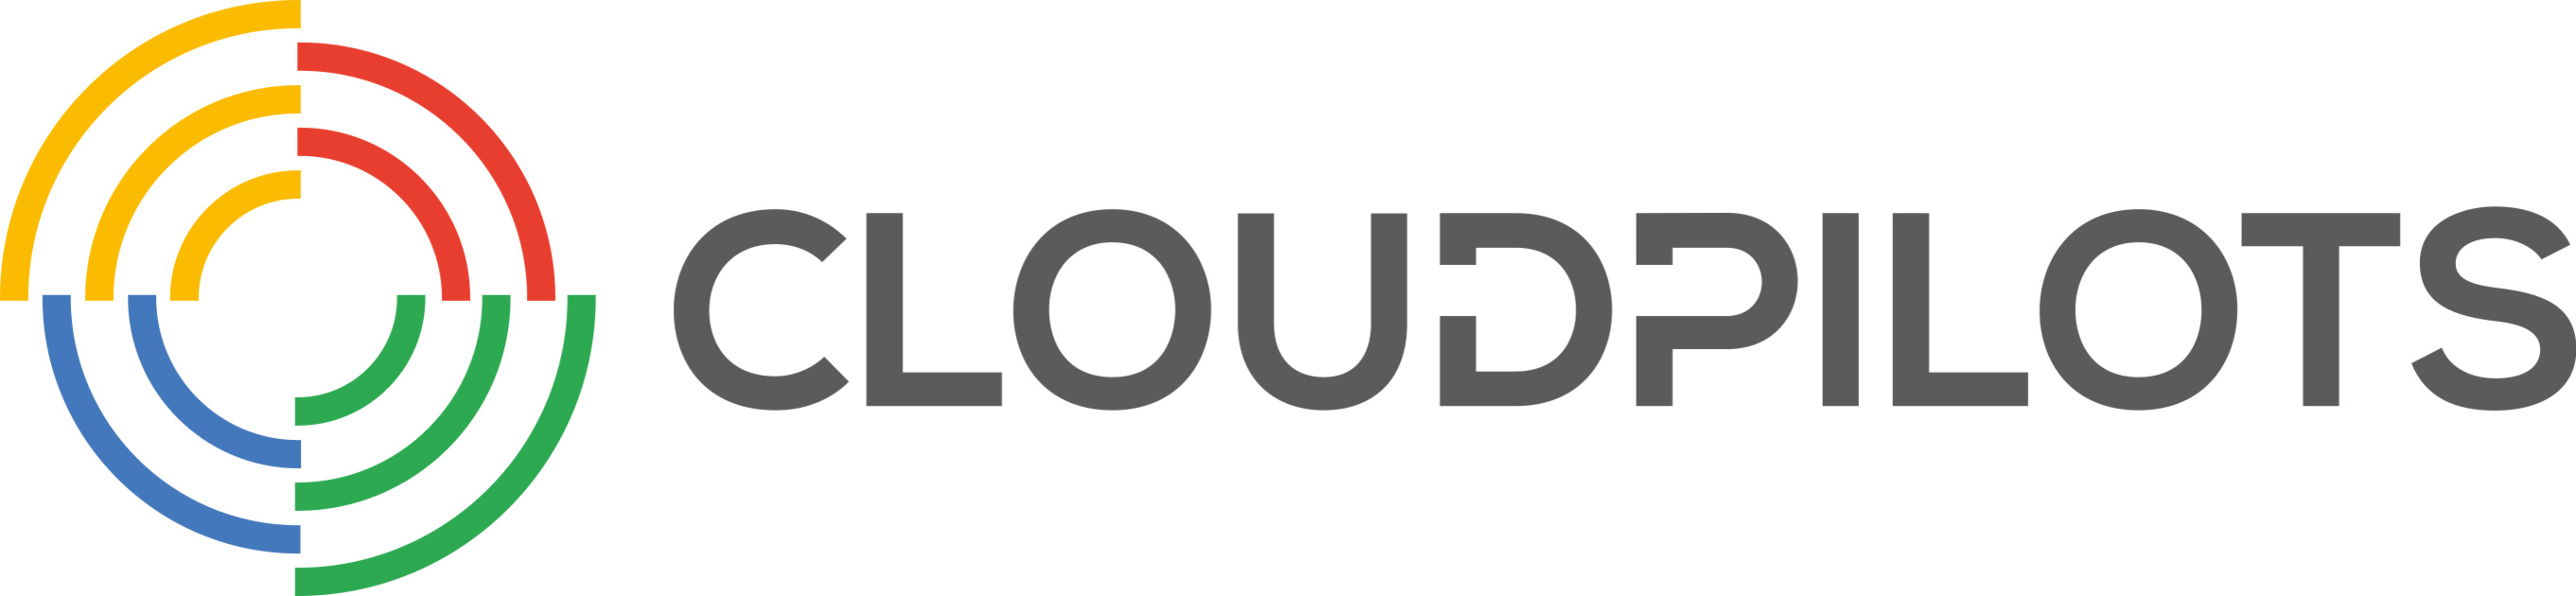 (c) Cloudpilots.com